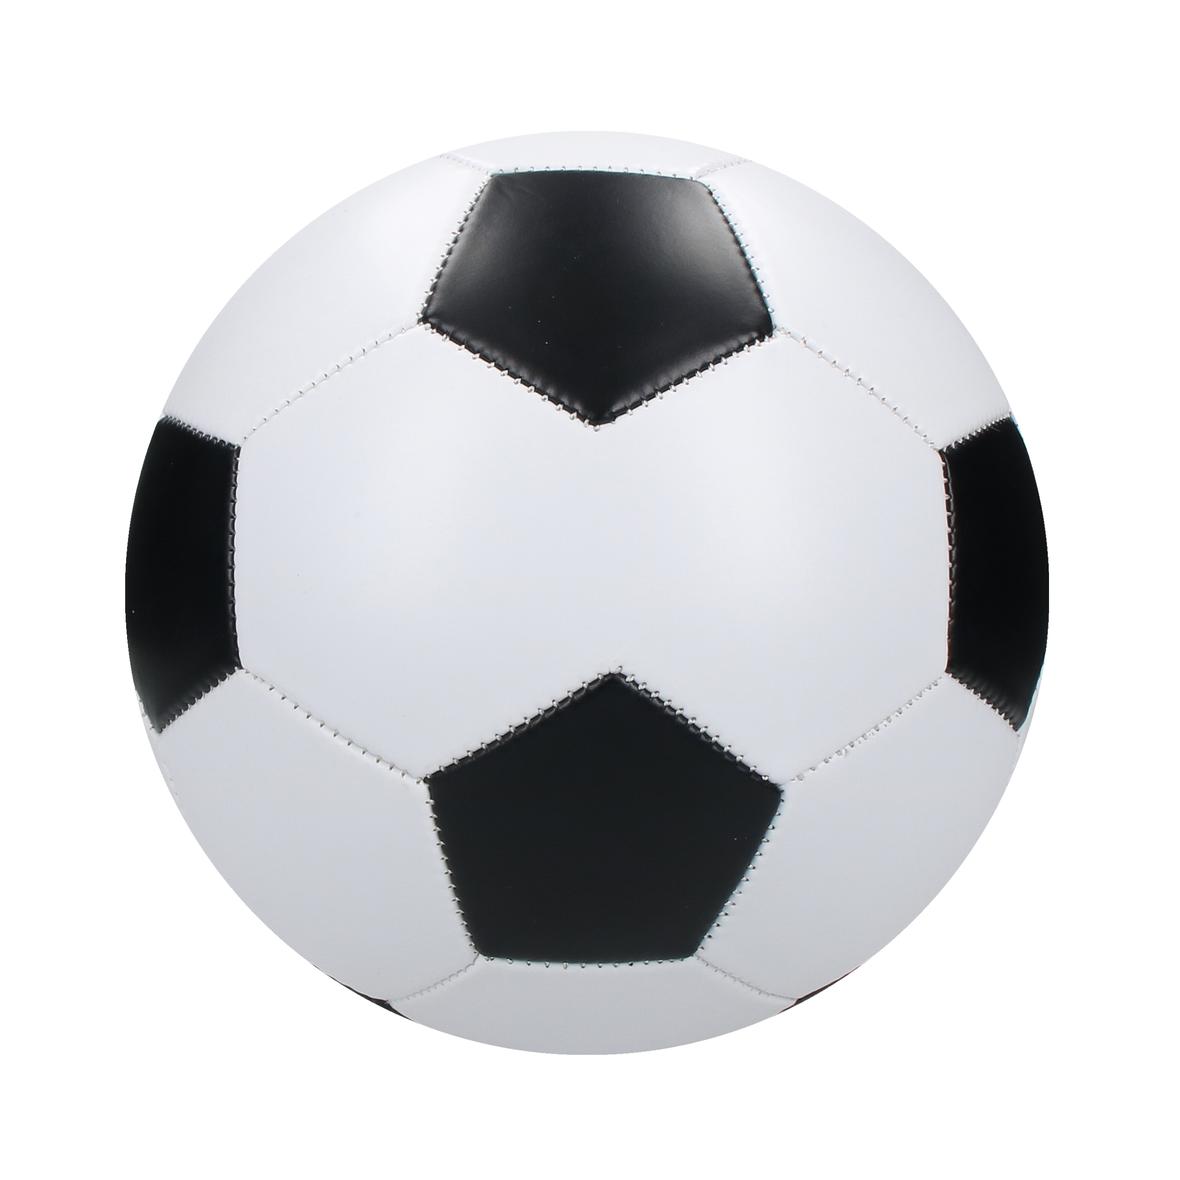 Ballon de football mat personnalisé - Basile - Zaprinta France